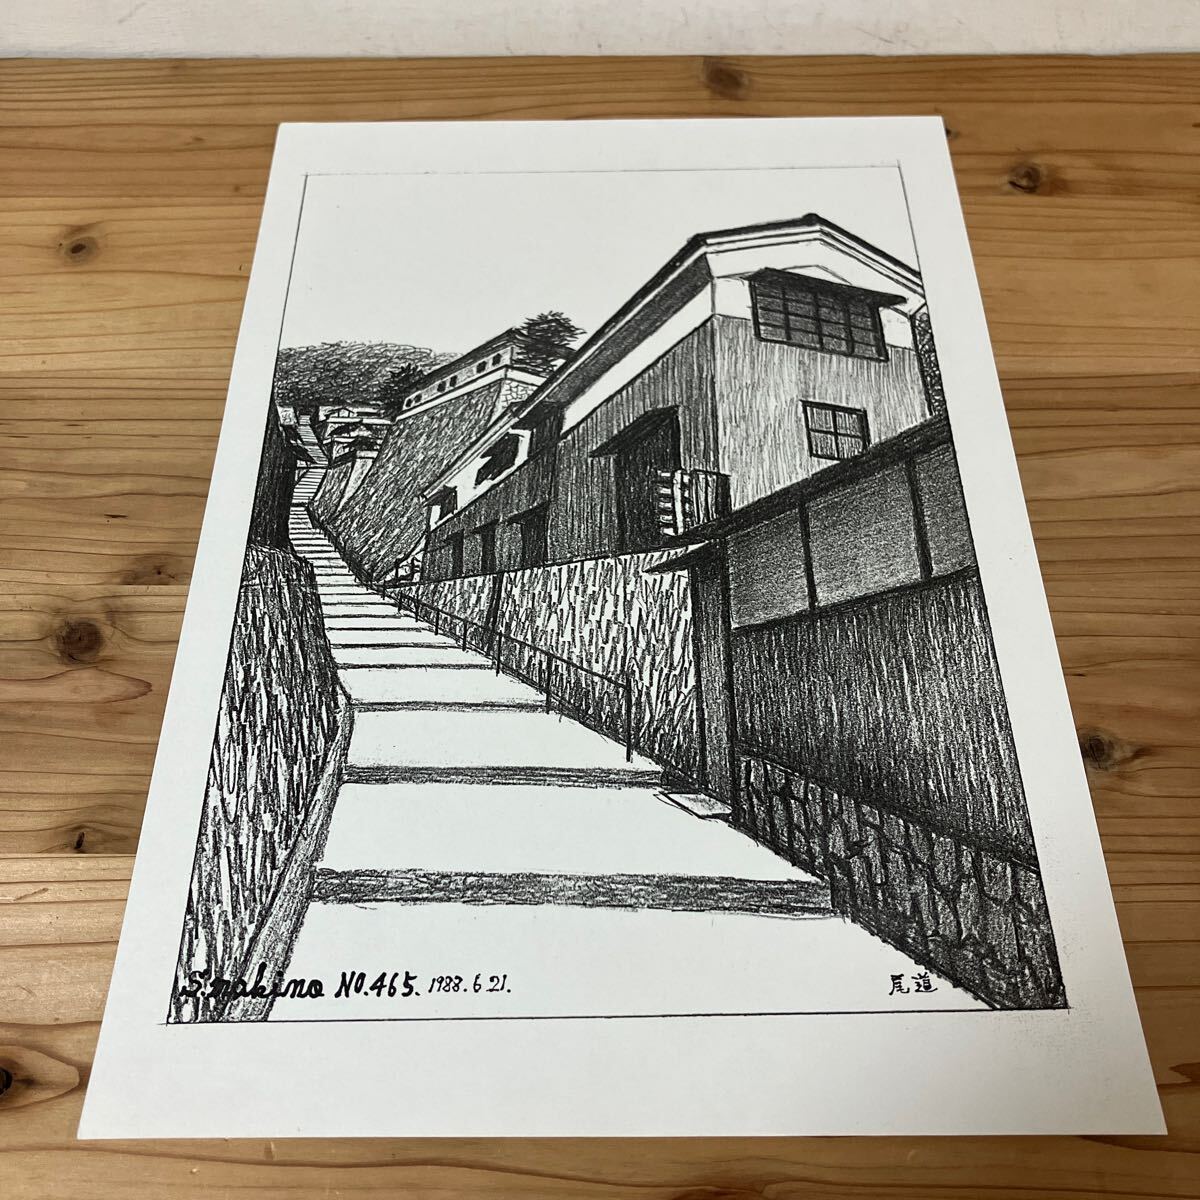 Mao H0305 [Makino Shunsuke Onomichi No. 465 Impression d'un dessin au crayon] 1988, Ouvrages d'art, Peinture, Dessin au crayon, Dessin au charbon de bois